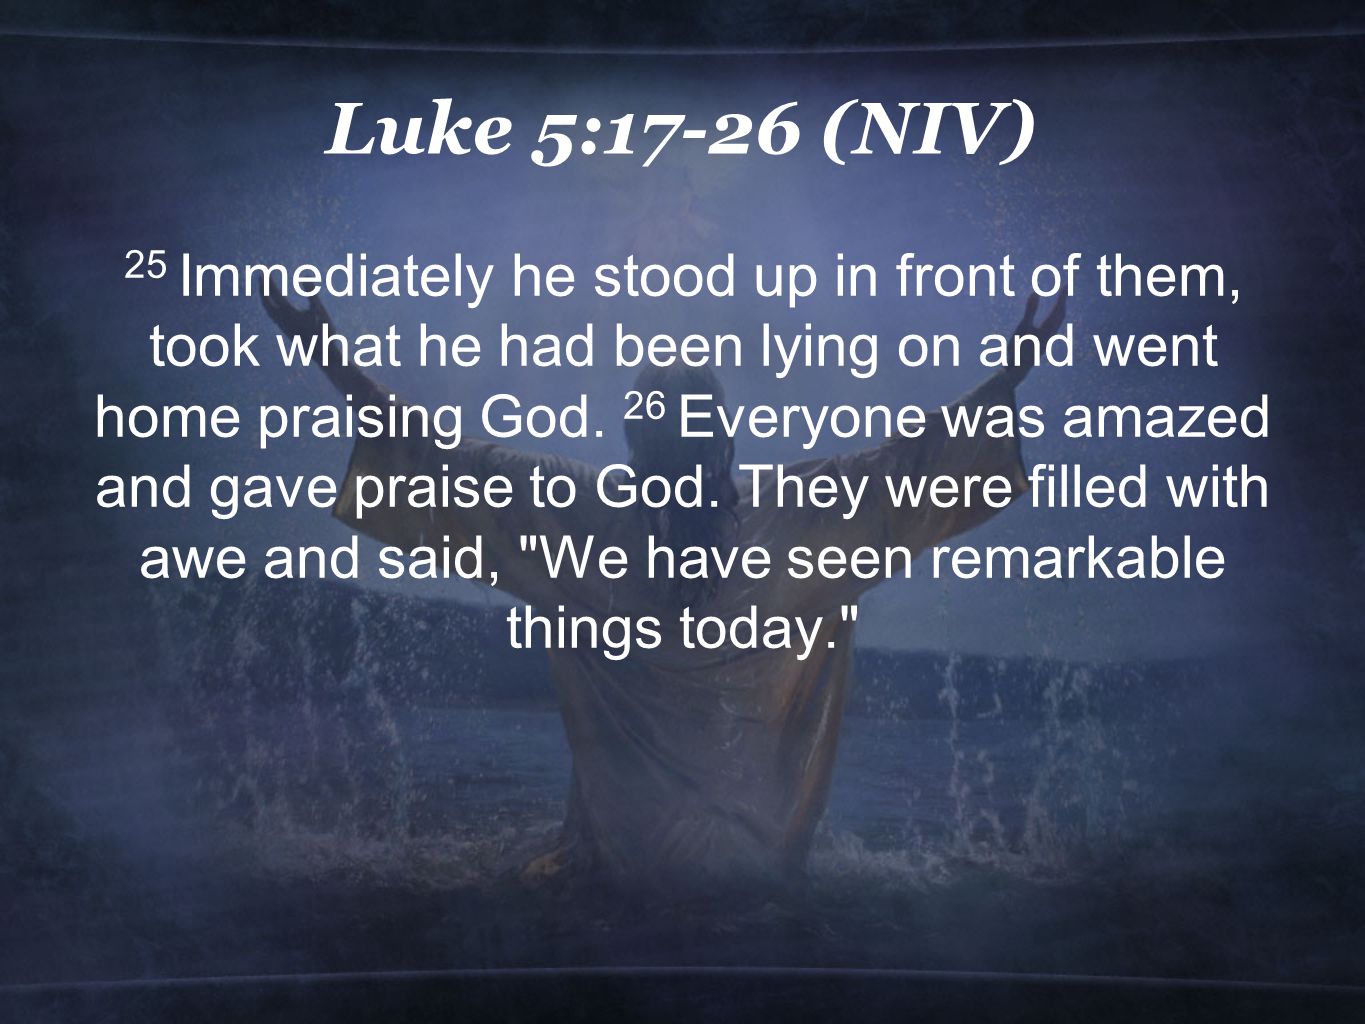 Luke 5:17-26 (NIV)